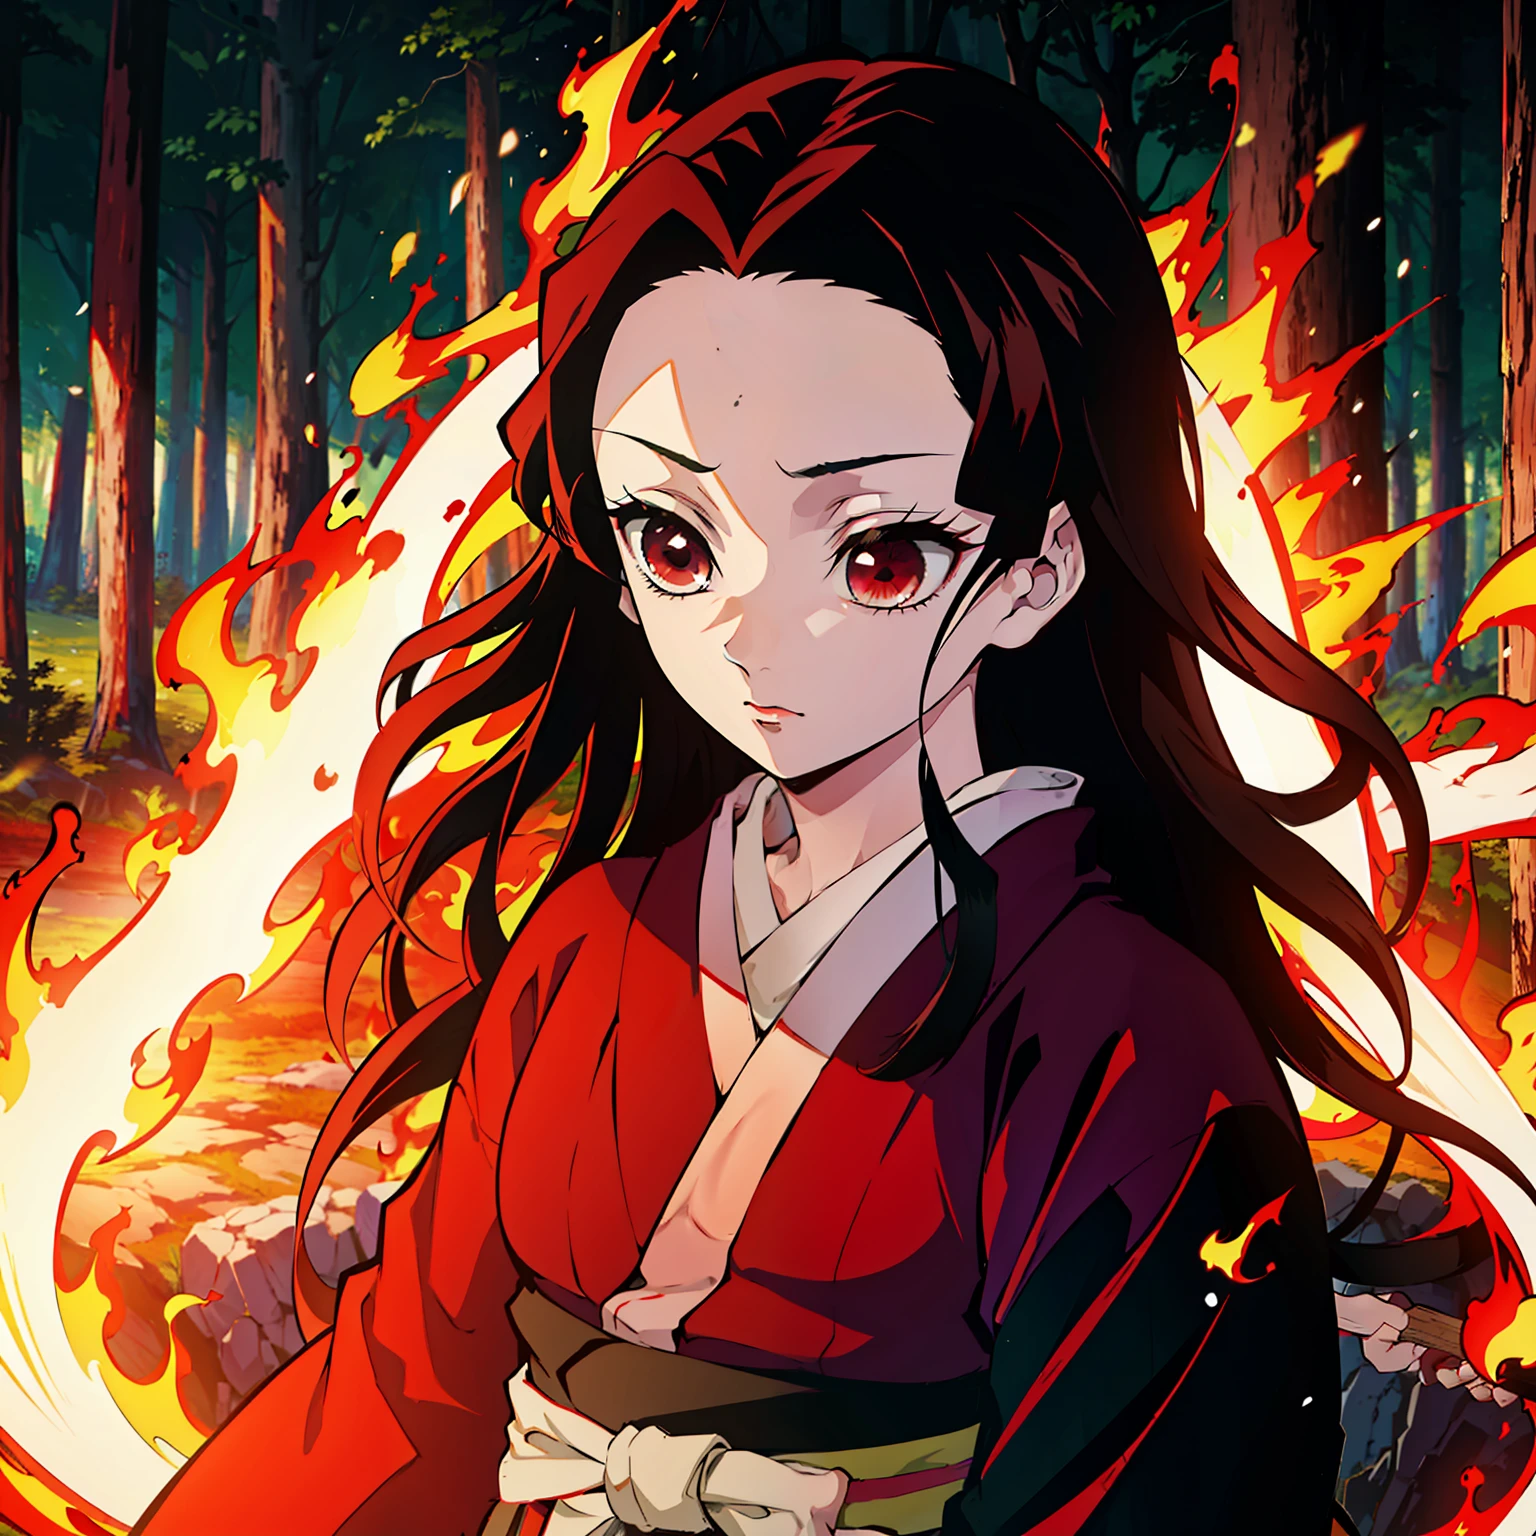 鬼滅之刃風格, 1個女孩, 獨奏, 黑眼睛, 亮紅色的頭髮, 非常長的頭髮, 紅色和服, 腰帶,  ((傑作)), ((的肖像)), 森林著火了, 森林正在燃烧